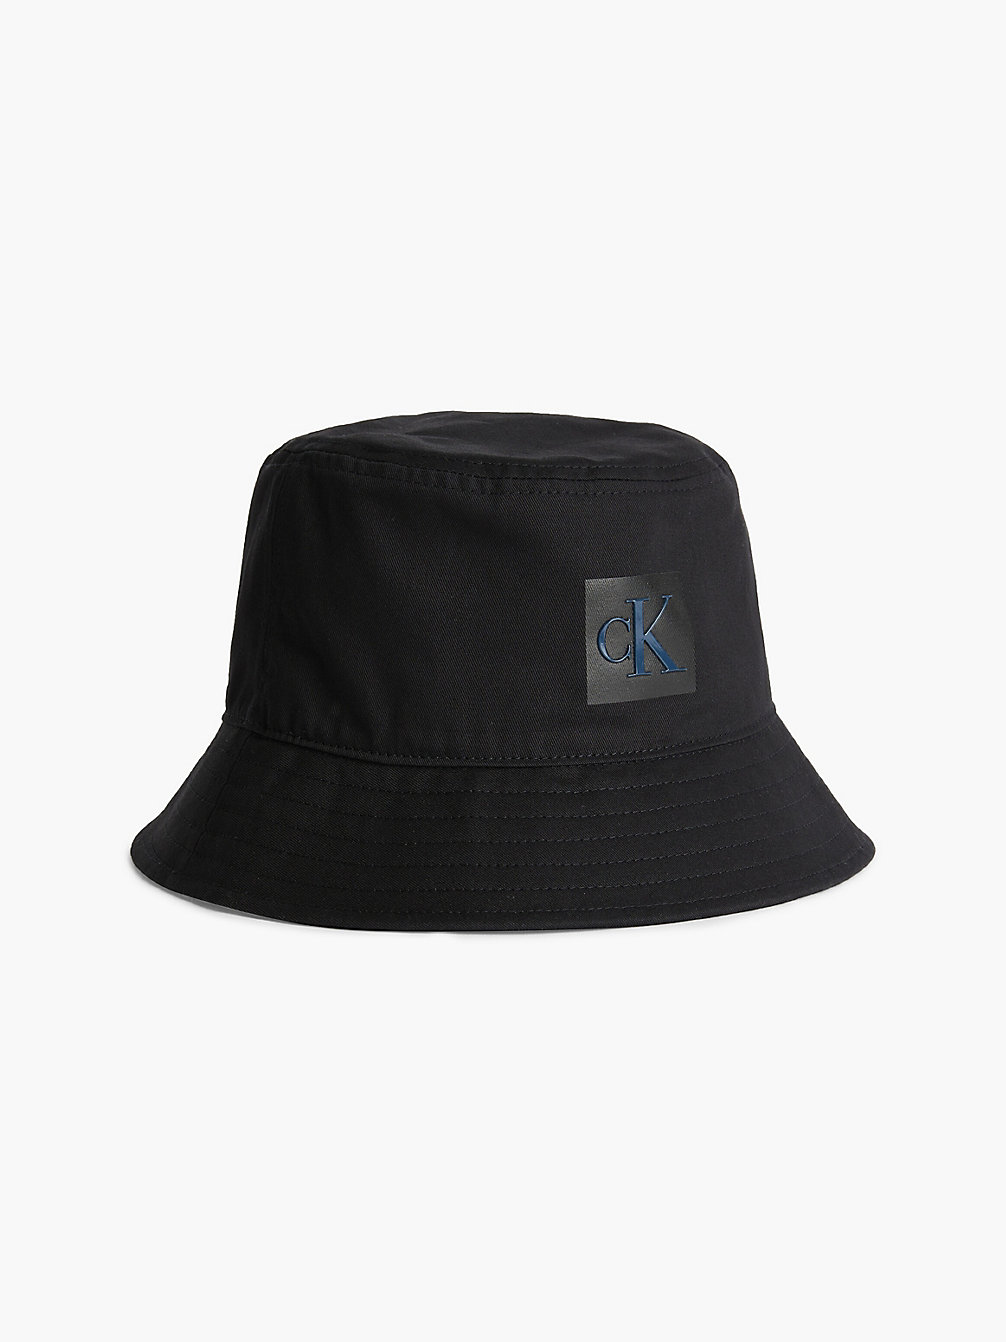 BLACK > Kapelusz Typu Bucket Hat Z Bawełny Organicznej > undefined Kobiety - Calvin Klein